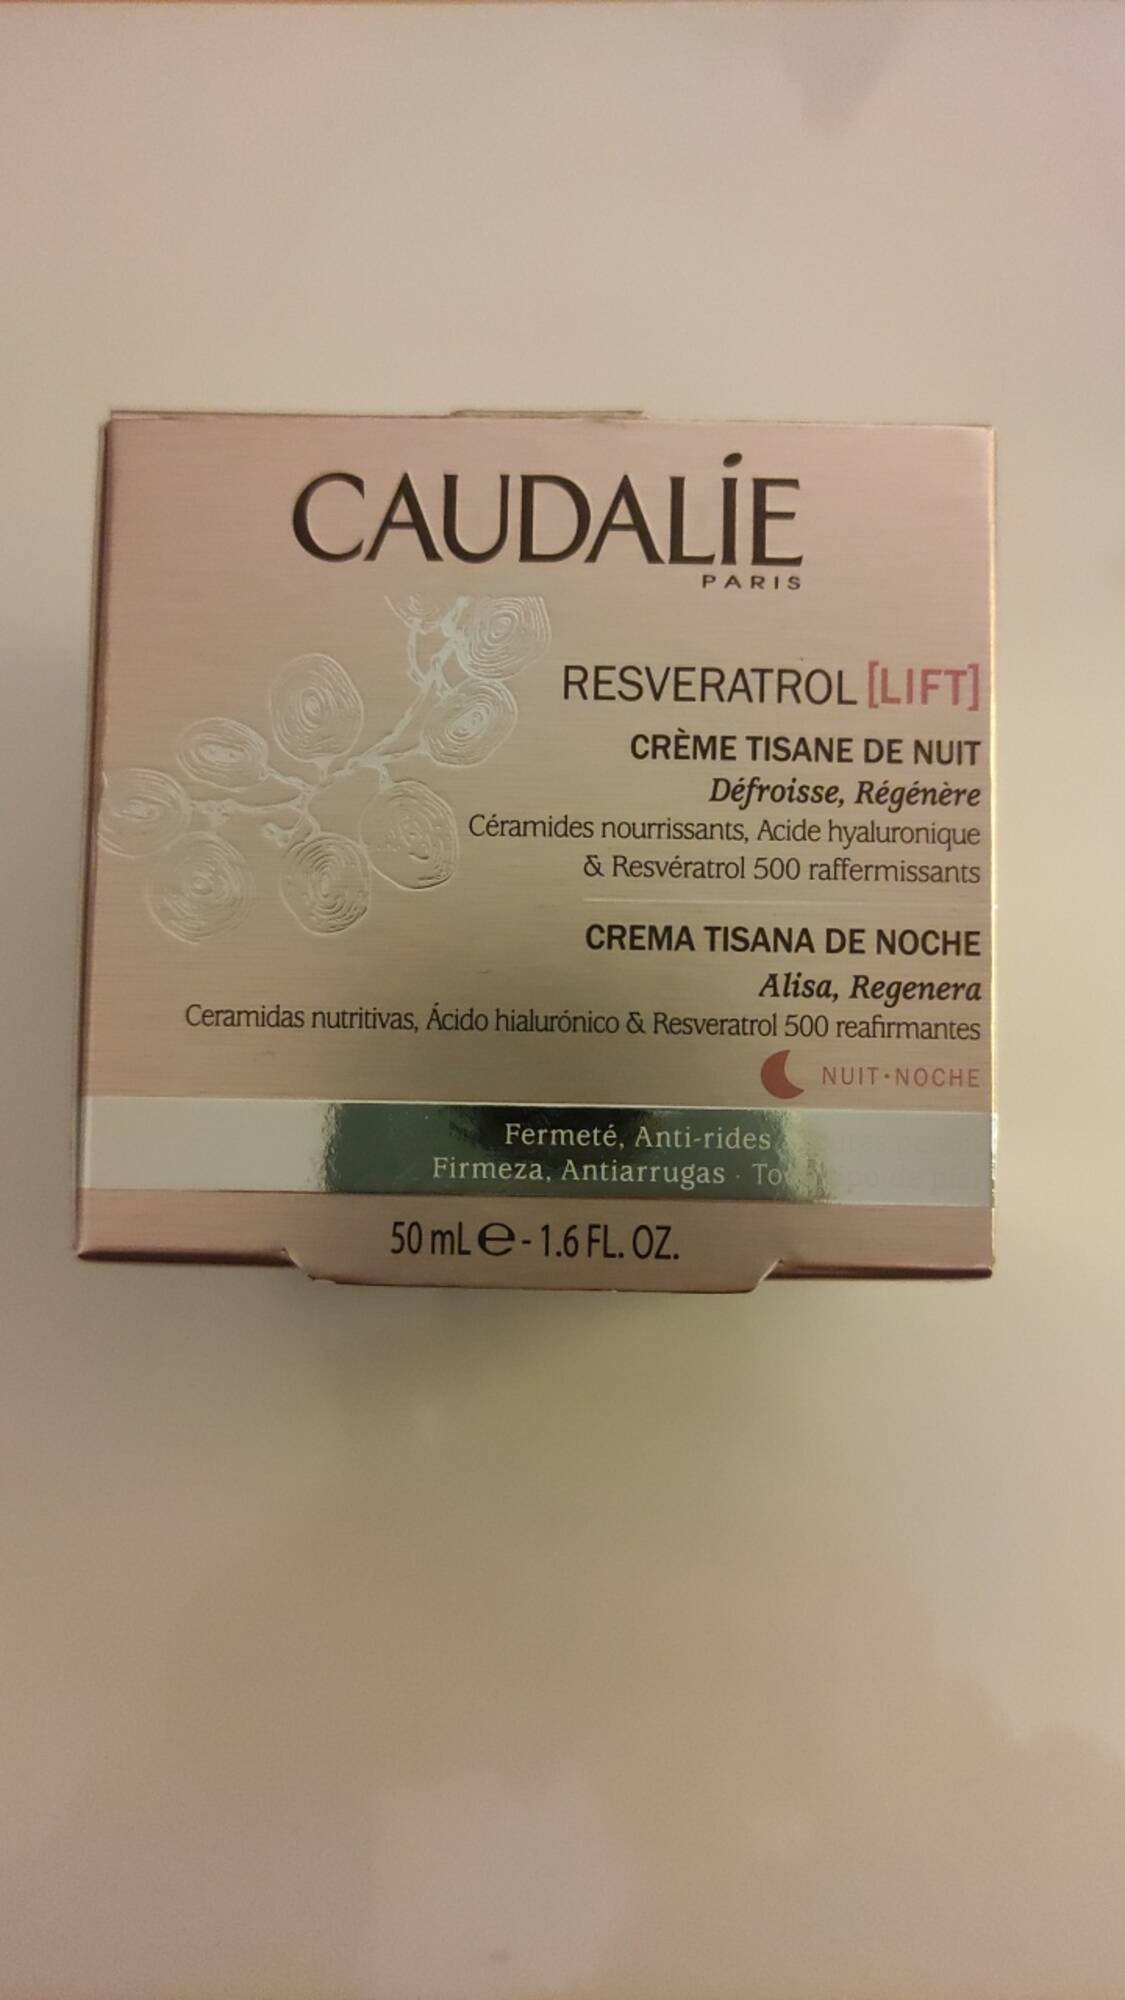 CAUDALIE - Resvératrol lift - Crème tisane de nuit